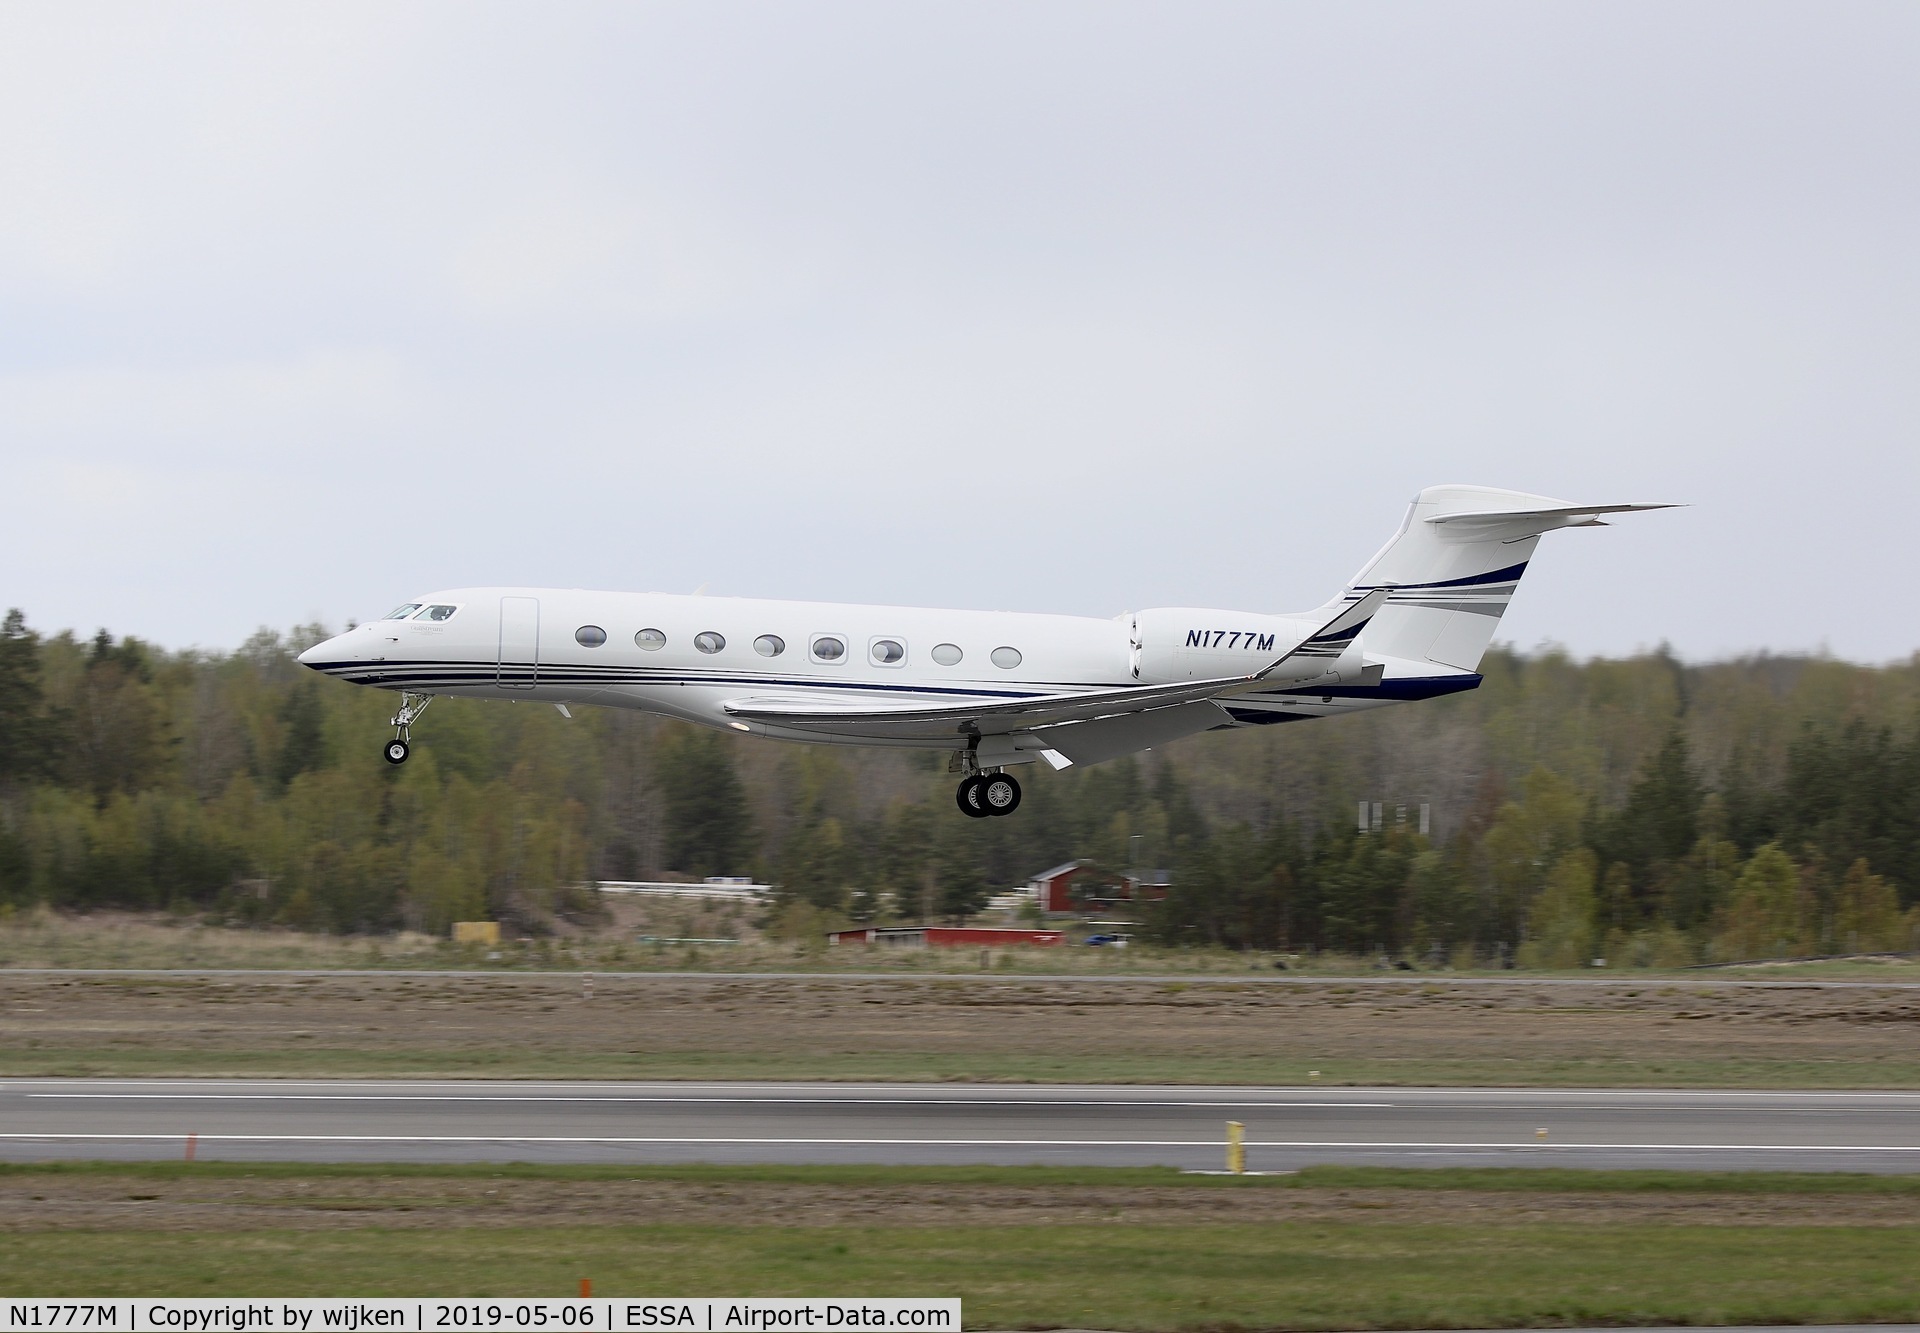 N1777M, 2014 Gulfstream Aerospace G650 (G-VI) C/N 6094, RWY 26